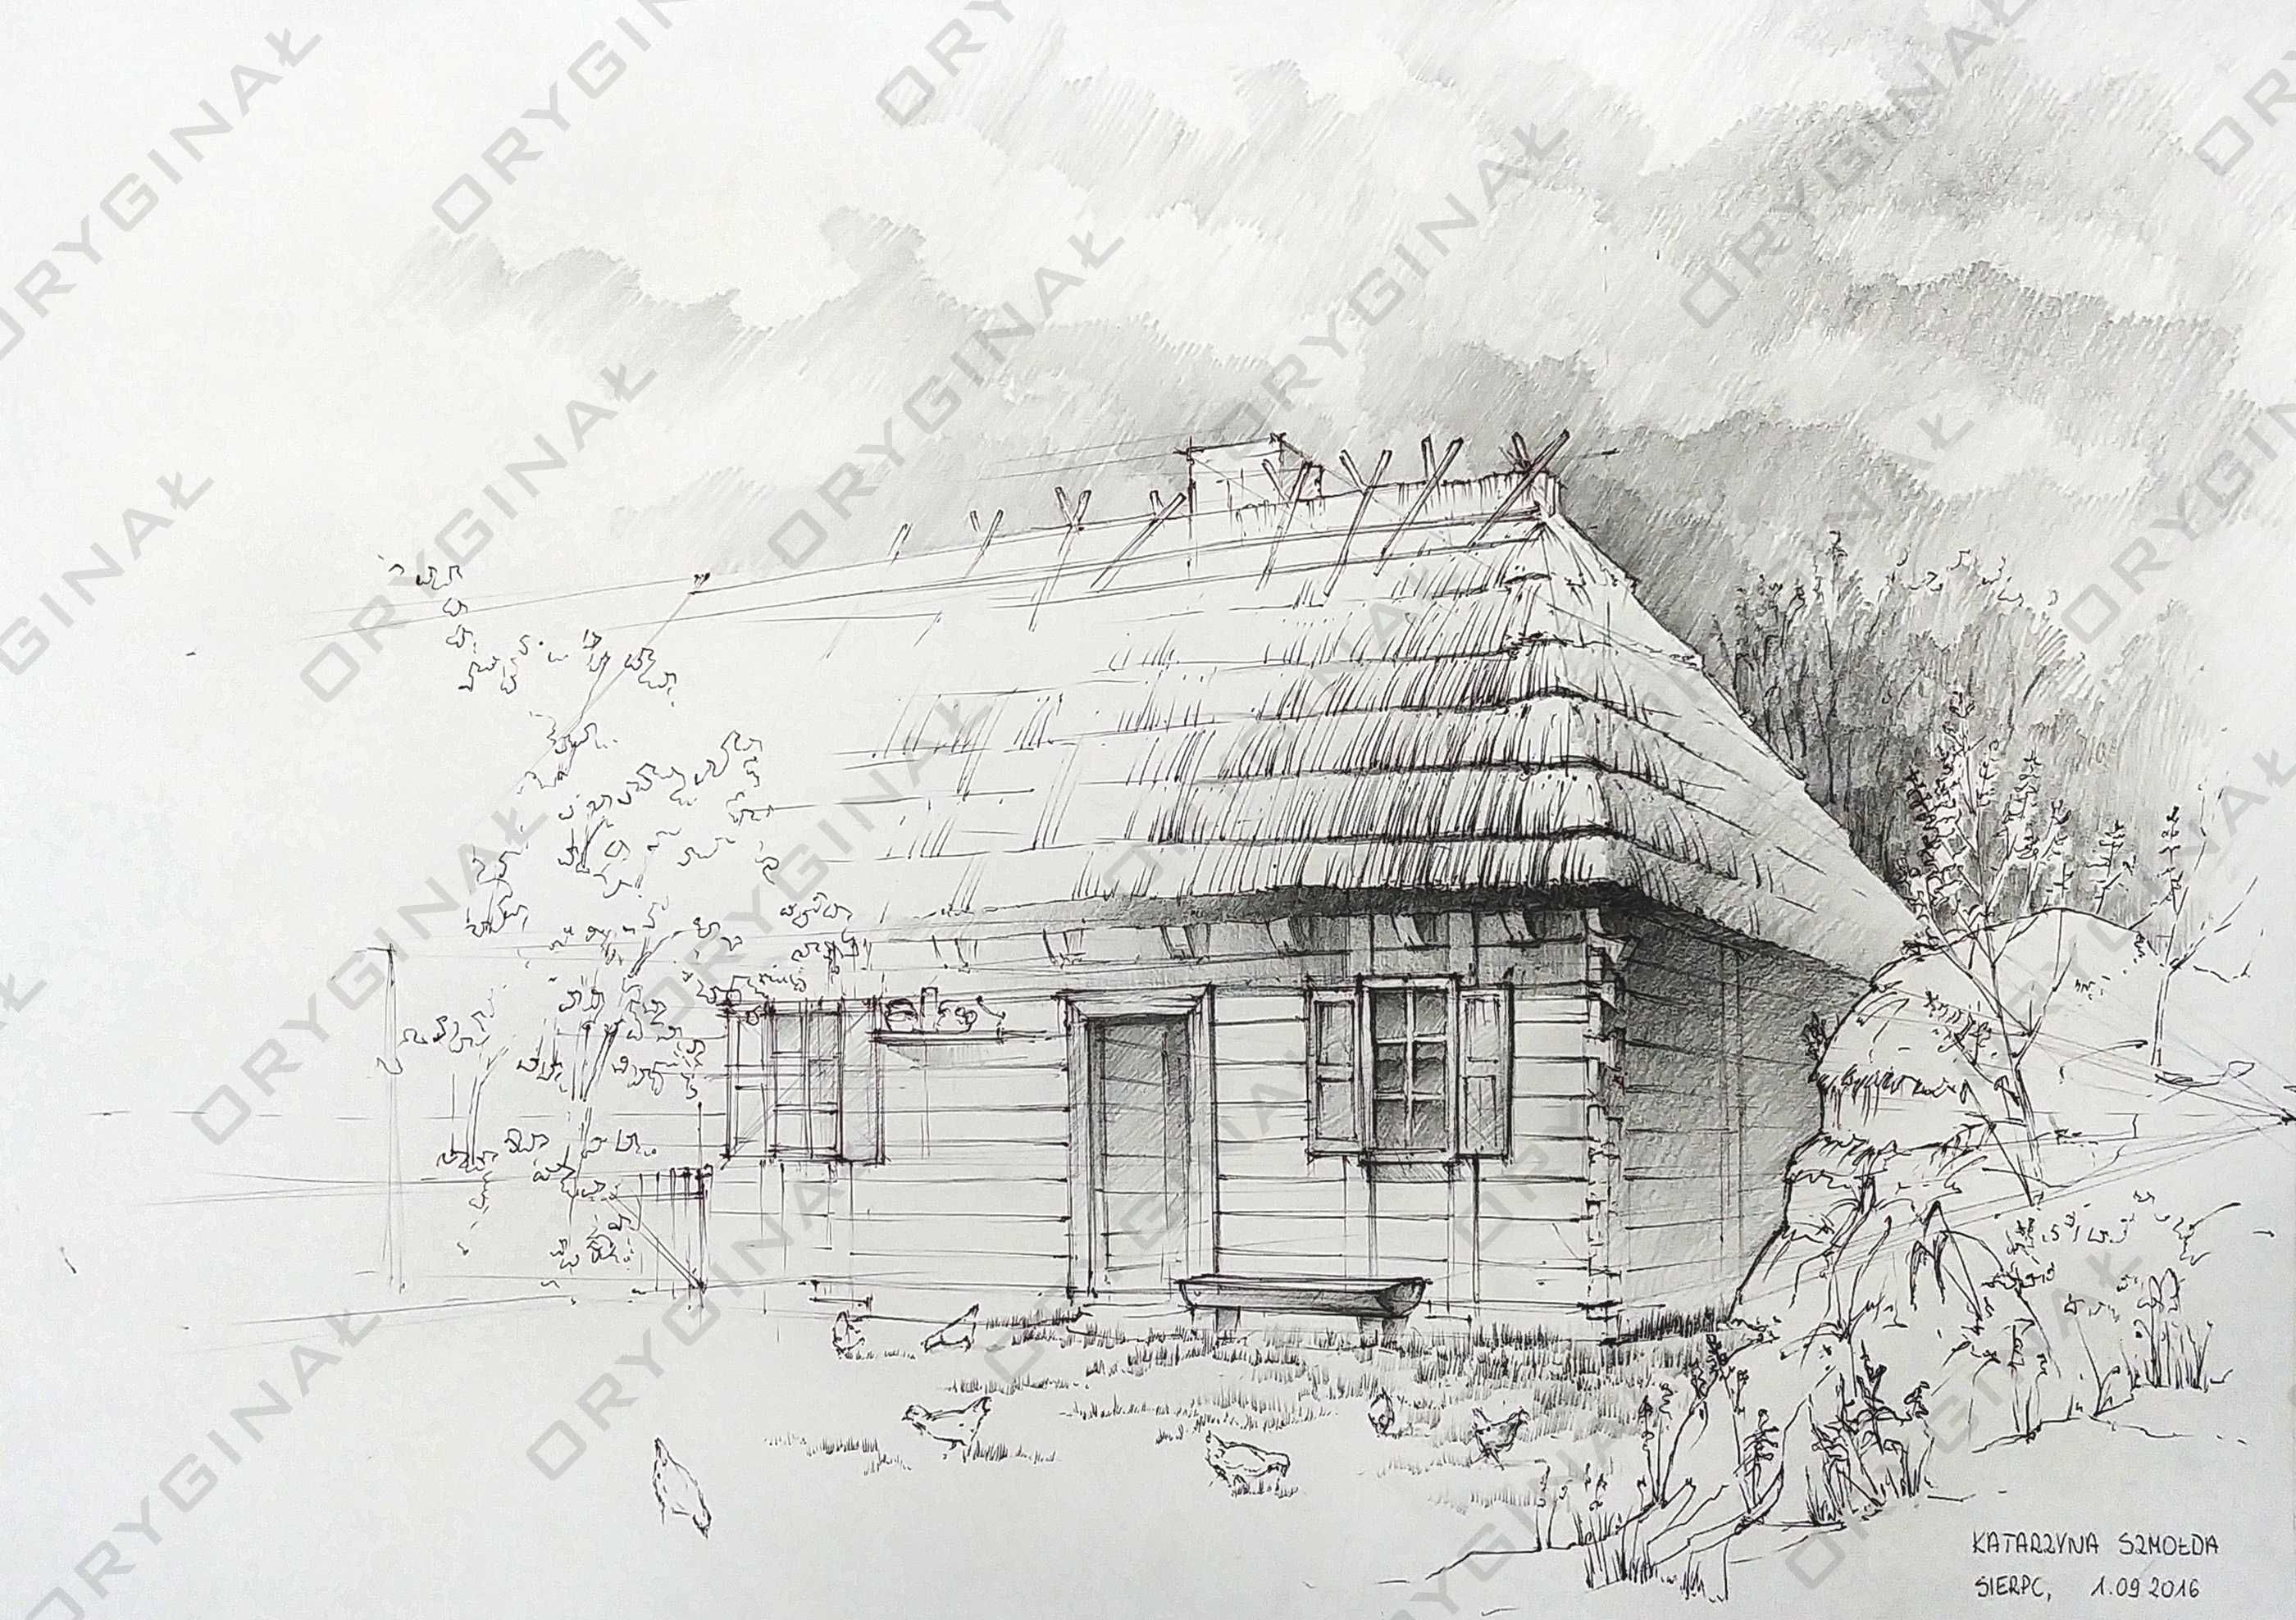 Obraz Rysunek odręczny 35 x 50 - ołówek, długopis - architektura, wieś